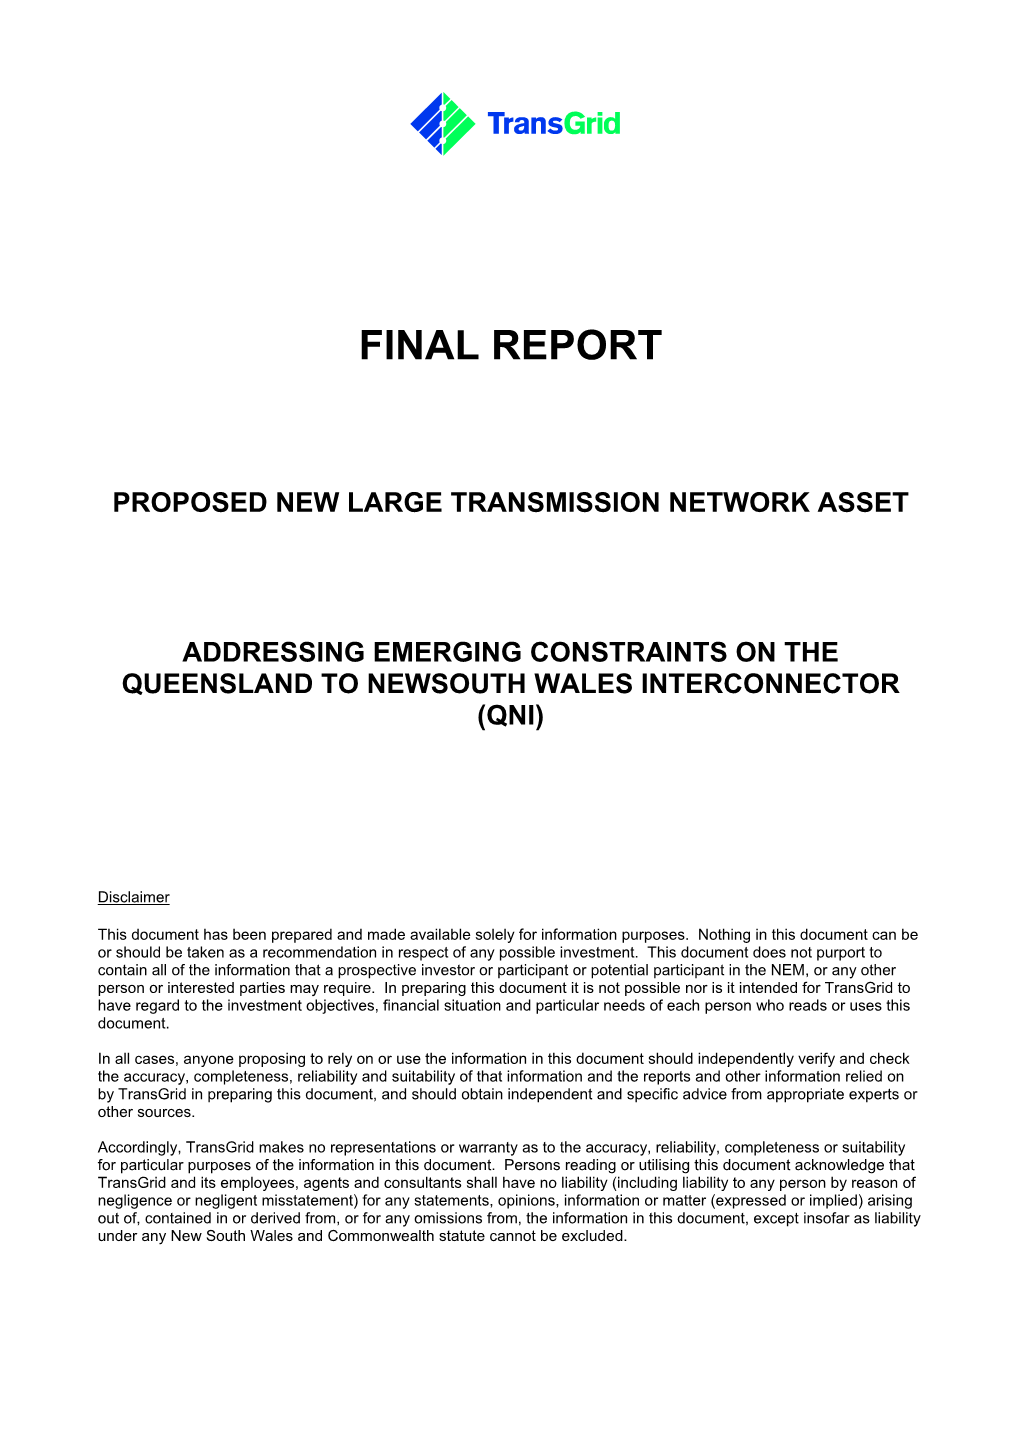 QNI Upgrade Final Report Feb 2007.Pdf